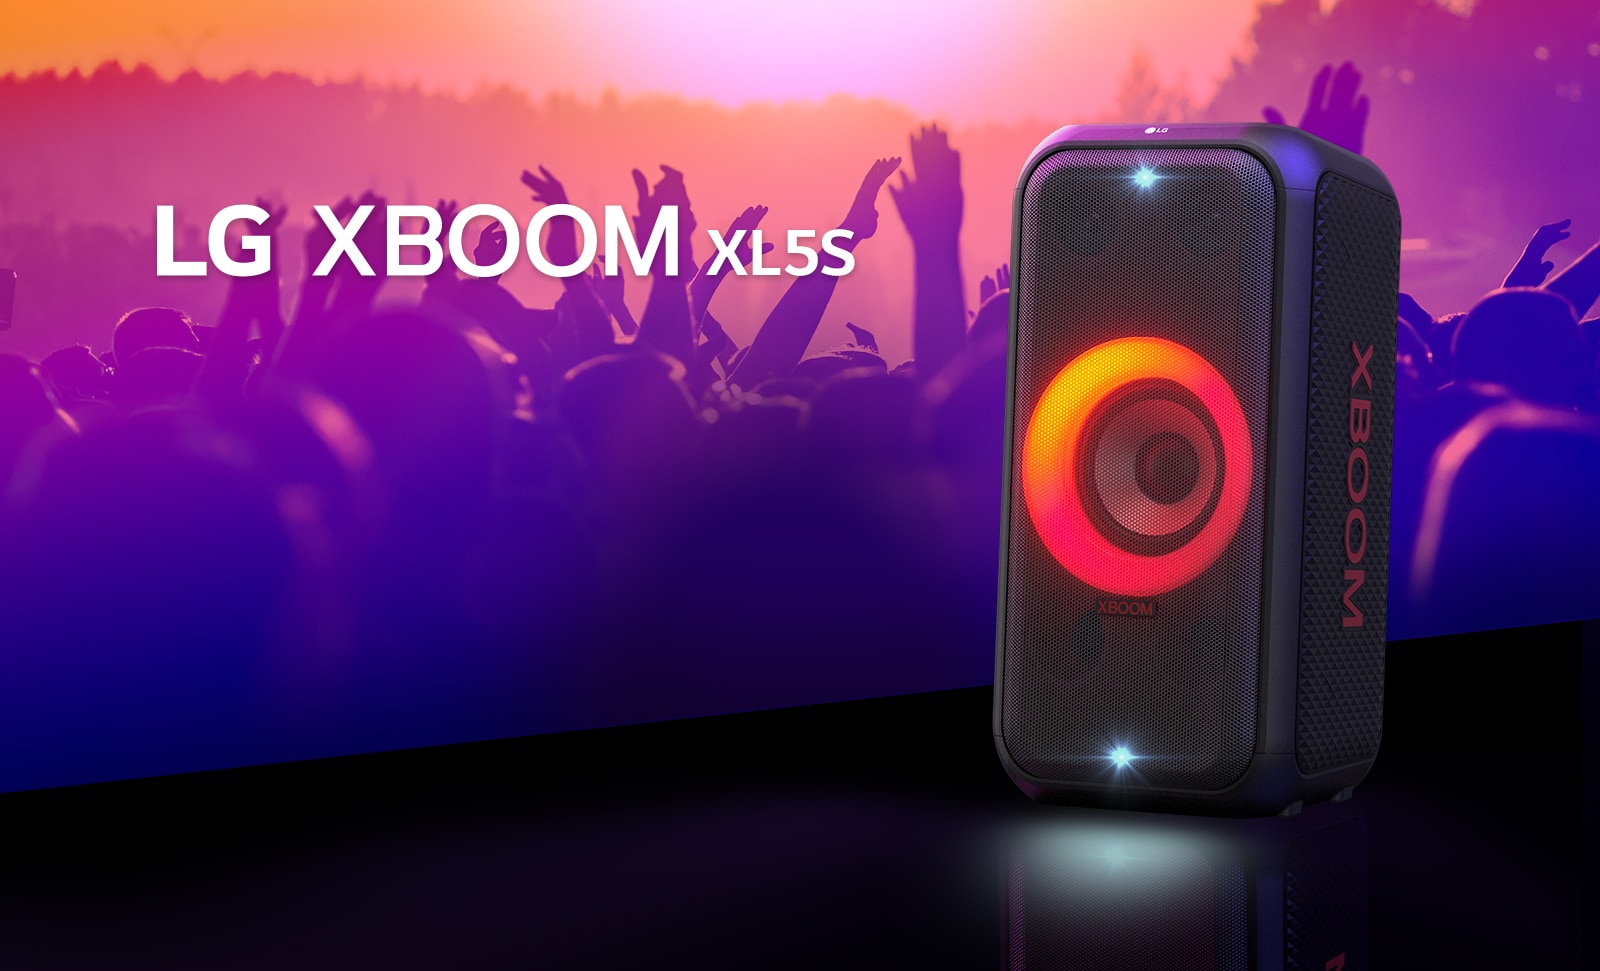 LG XBOOM XL5S nalazi se na pozornici s uključenim osvjetljenjem narančastog gradijenta. Iza pozornice ljudi uživaju u glazbi